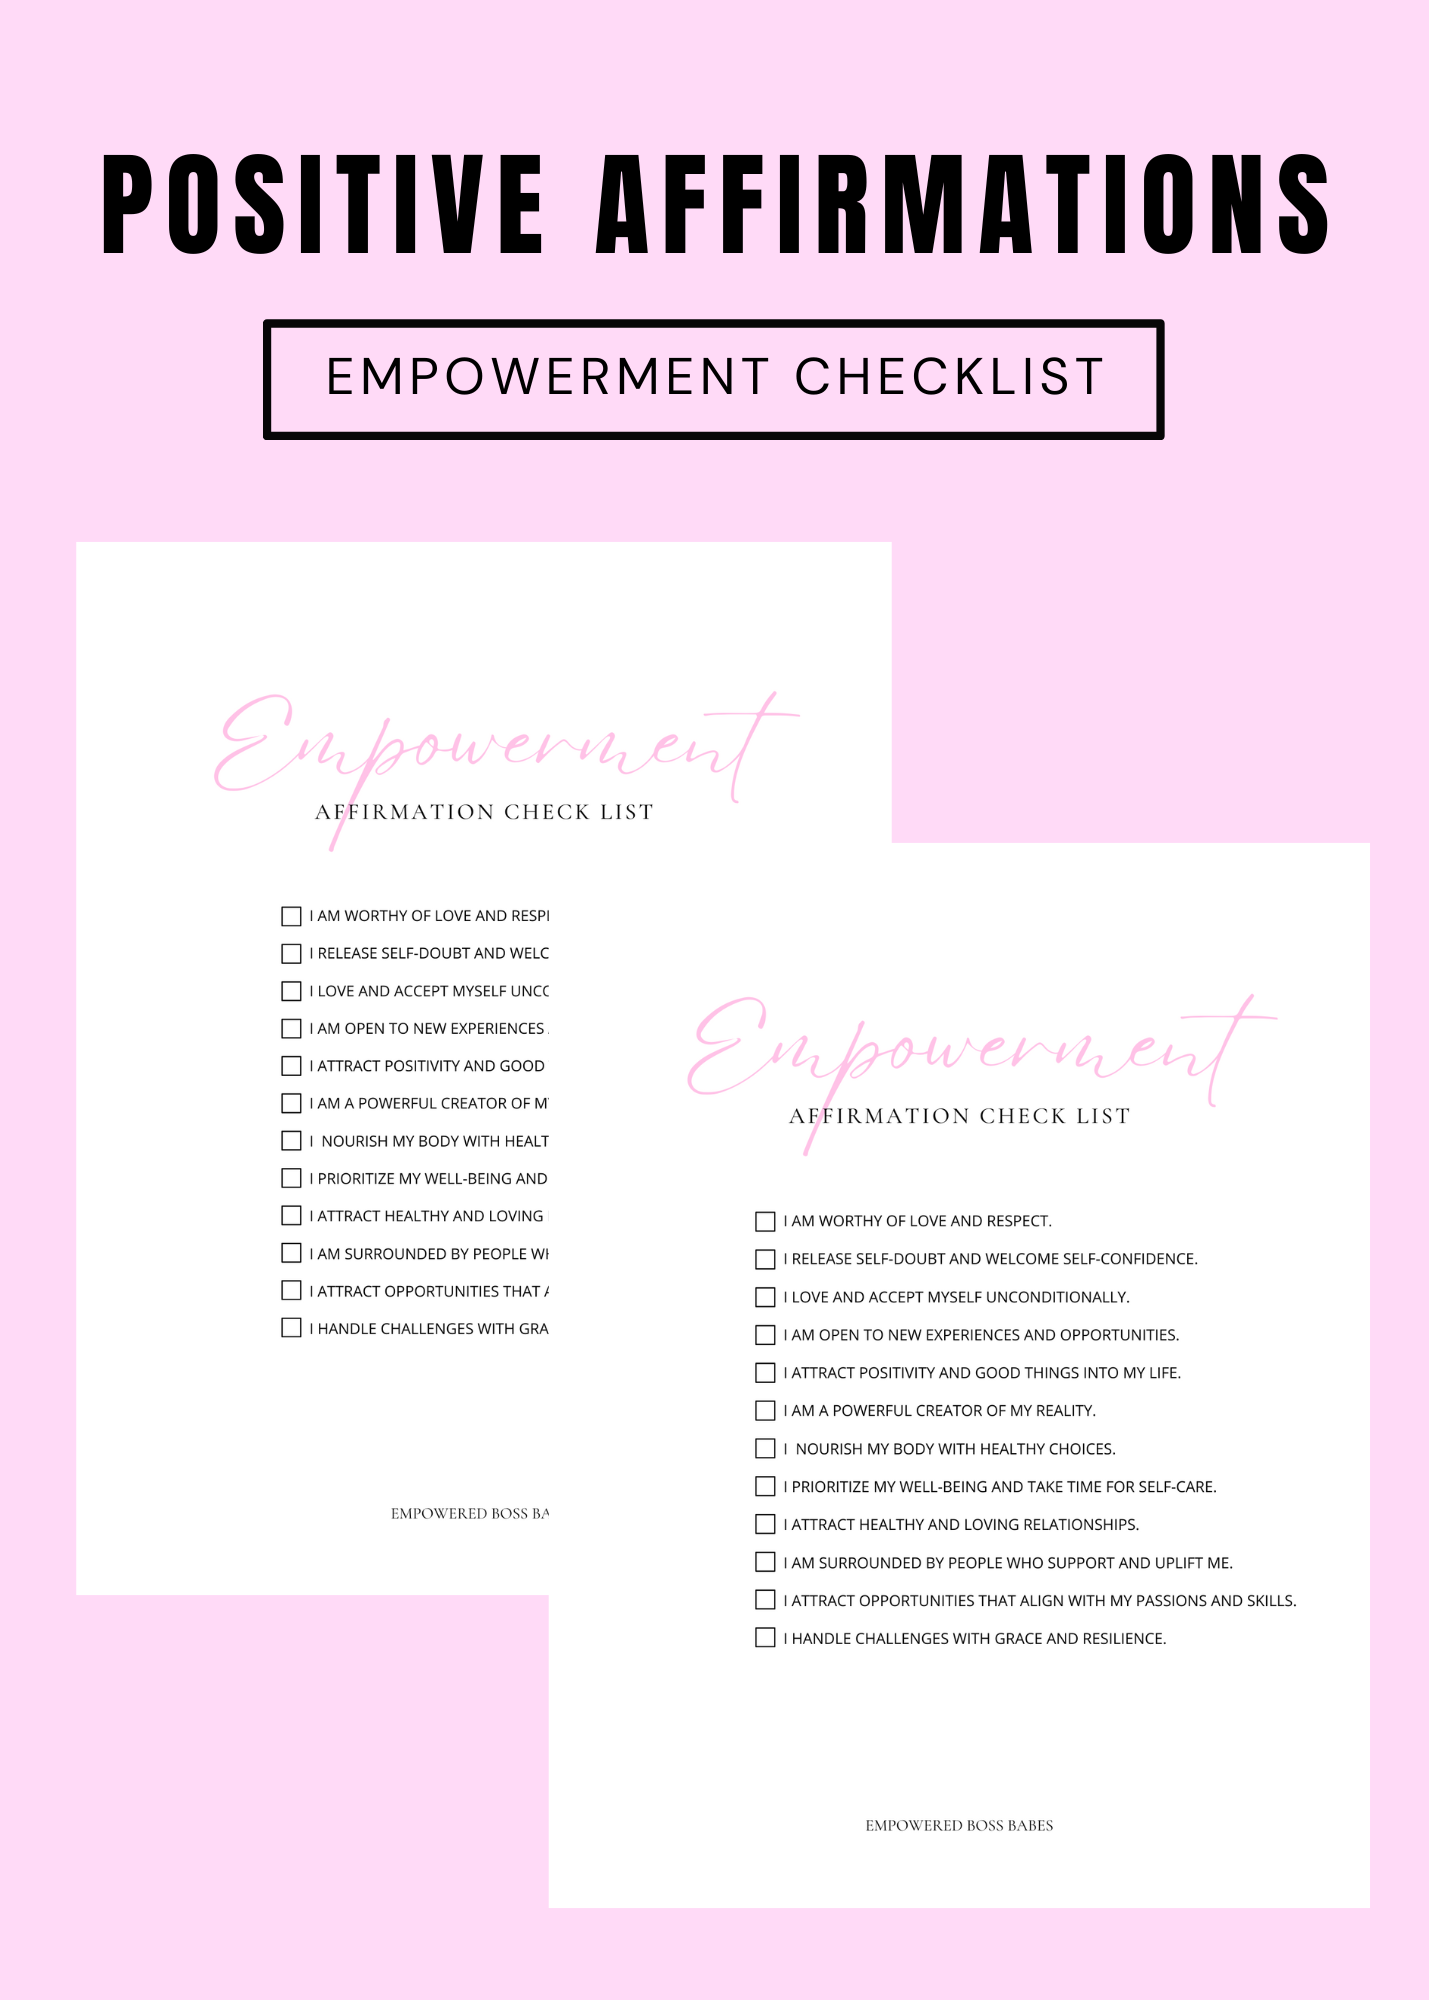 Empowering Affirmation Checklist